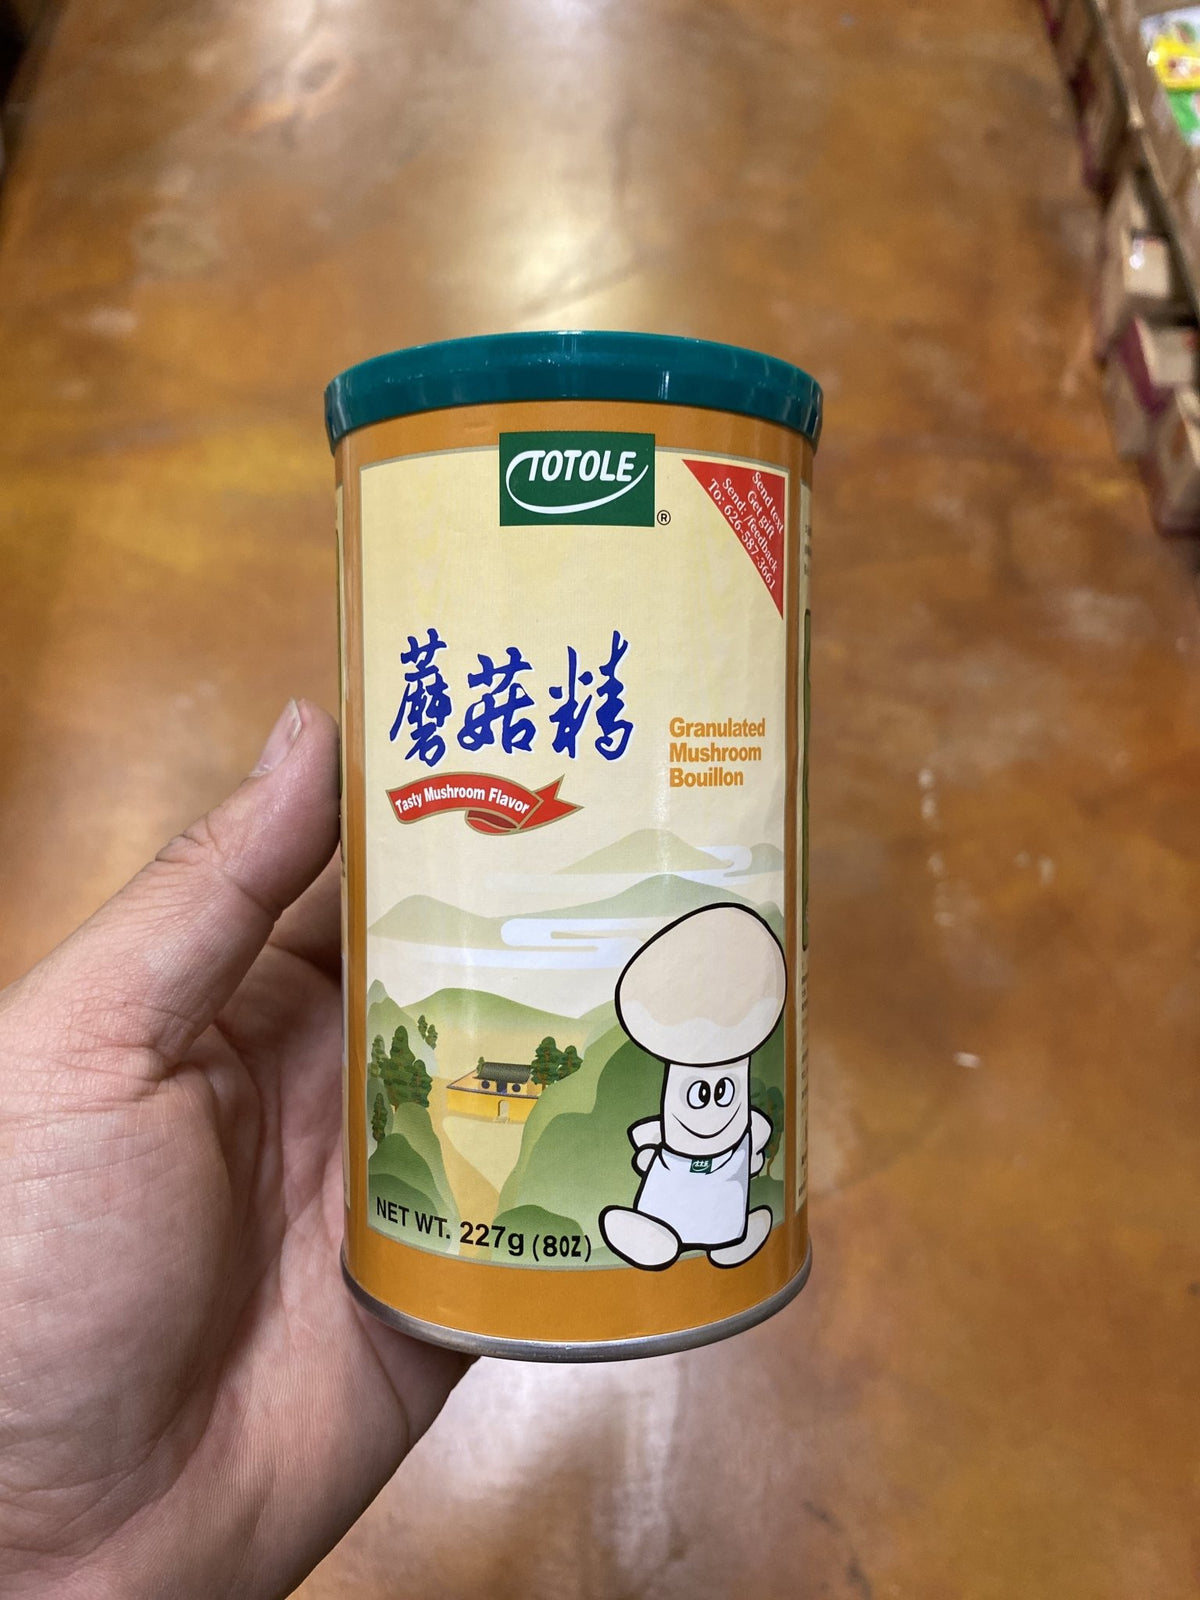 https://www.eastsideasianmarket.com/cdn/shop/products/totole-mushroom-seasoning-bouillon-8oz-167468_1200x1600.jpg?v=1587545082